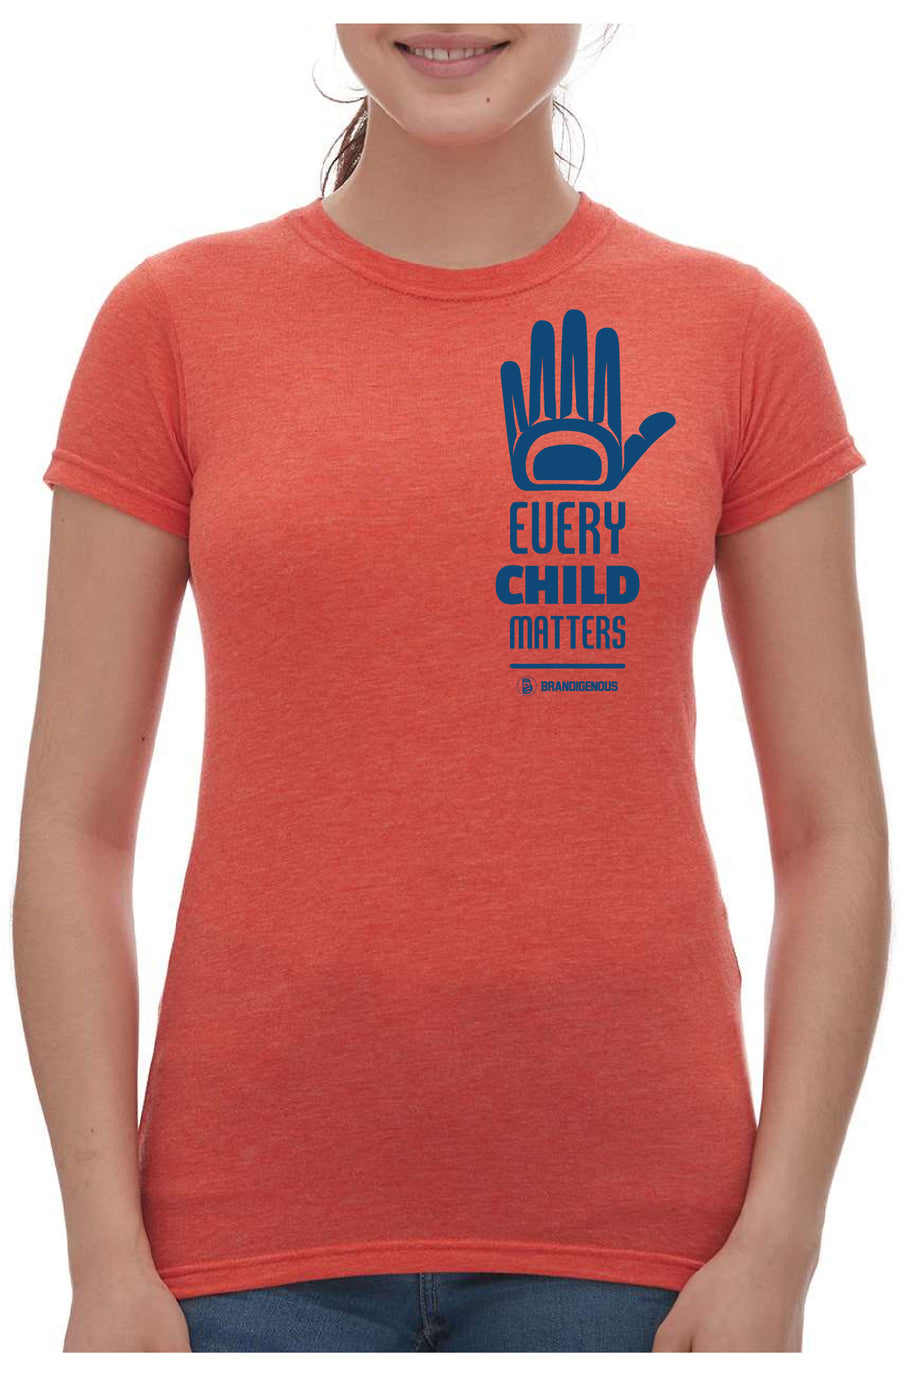 Every Child Matters -  Orange Shirt Day Tee - Women's